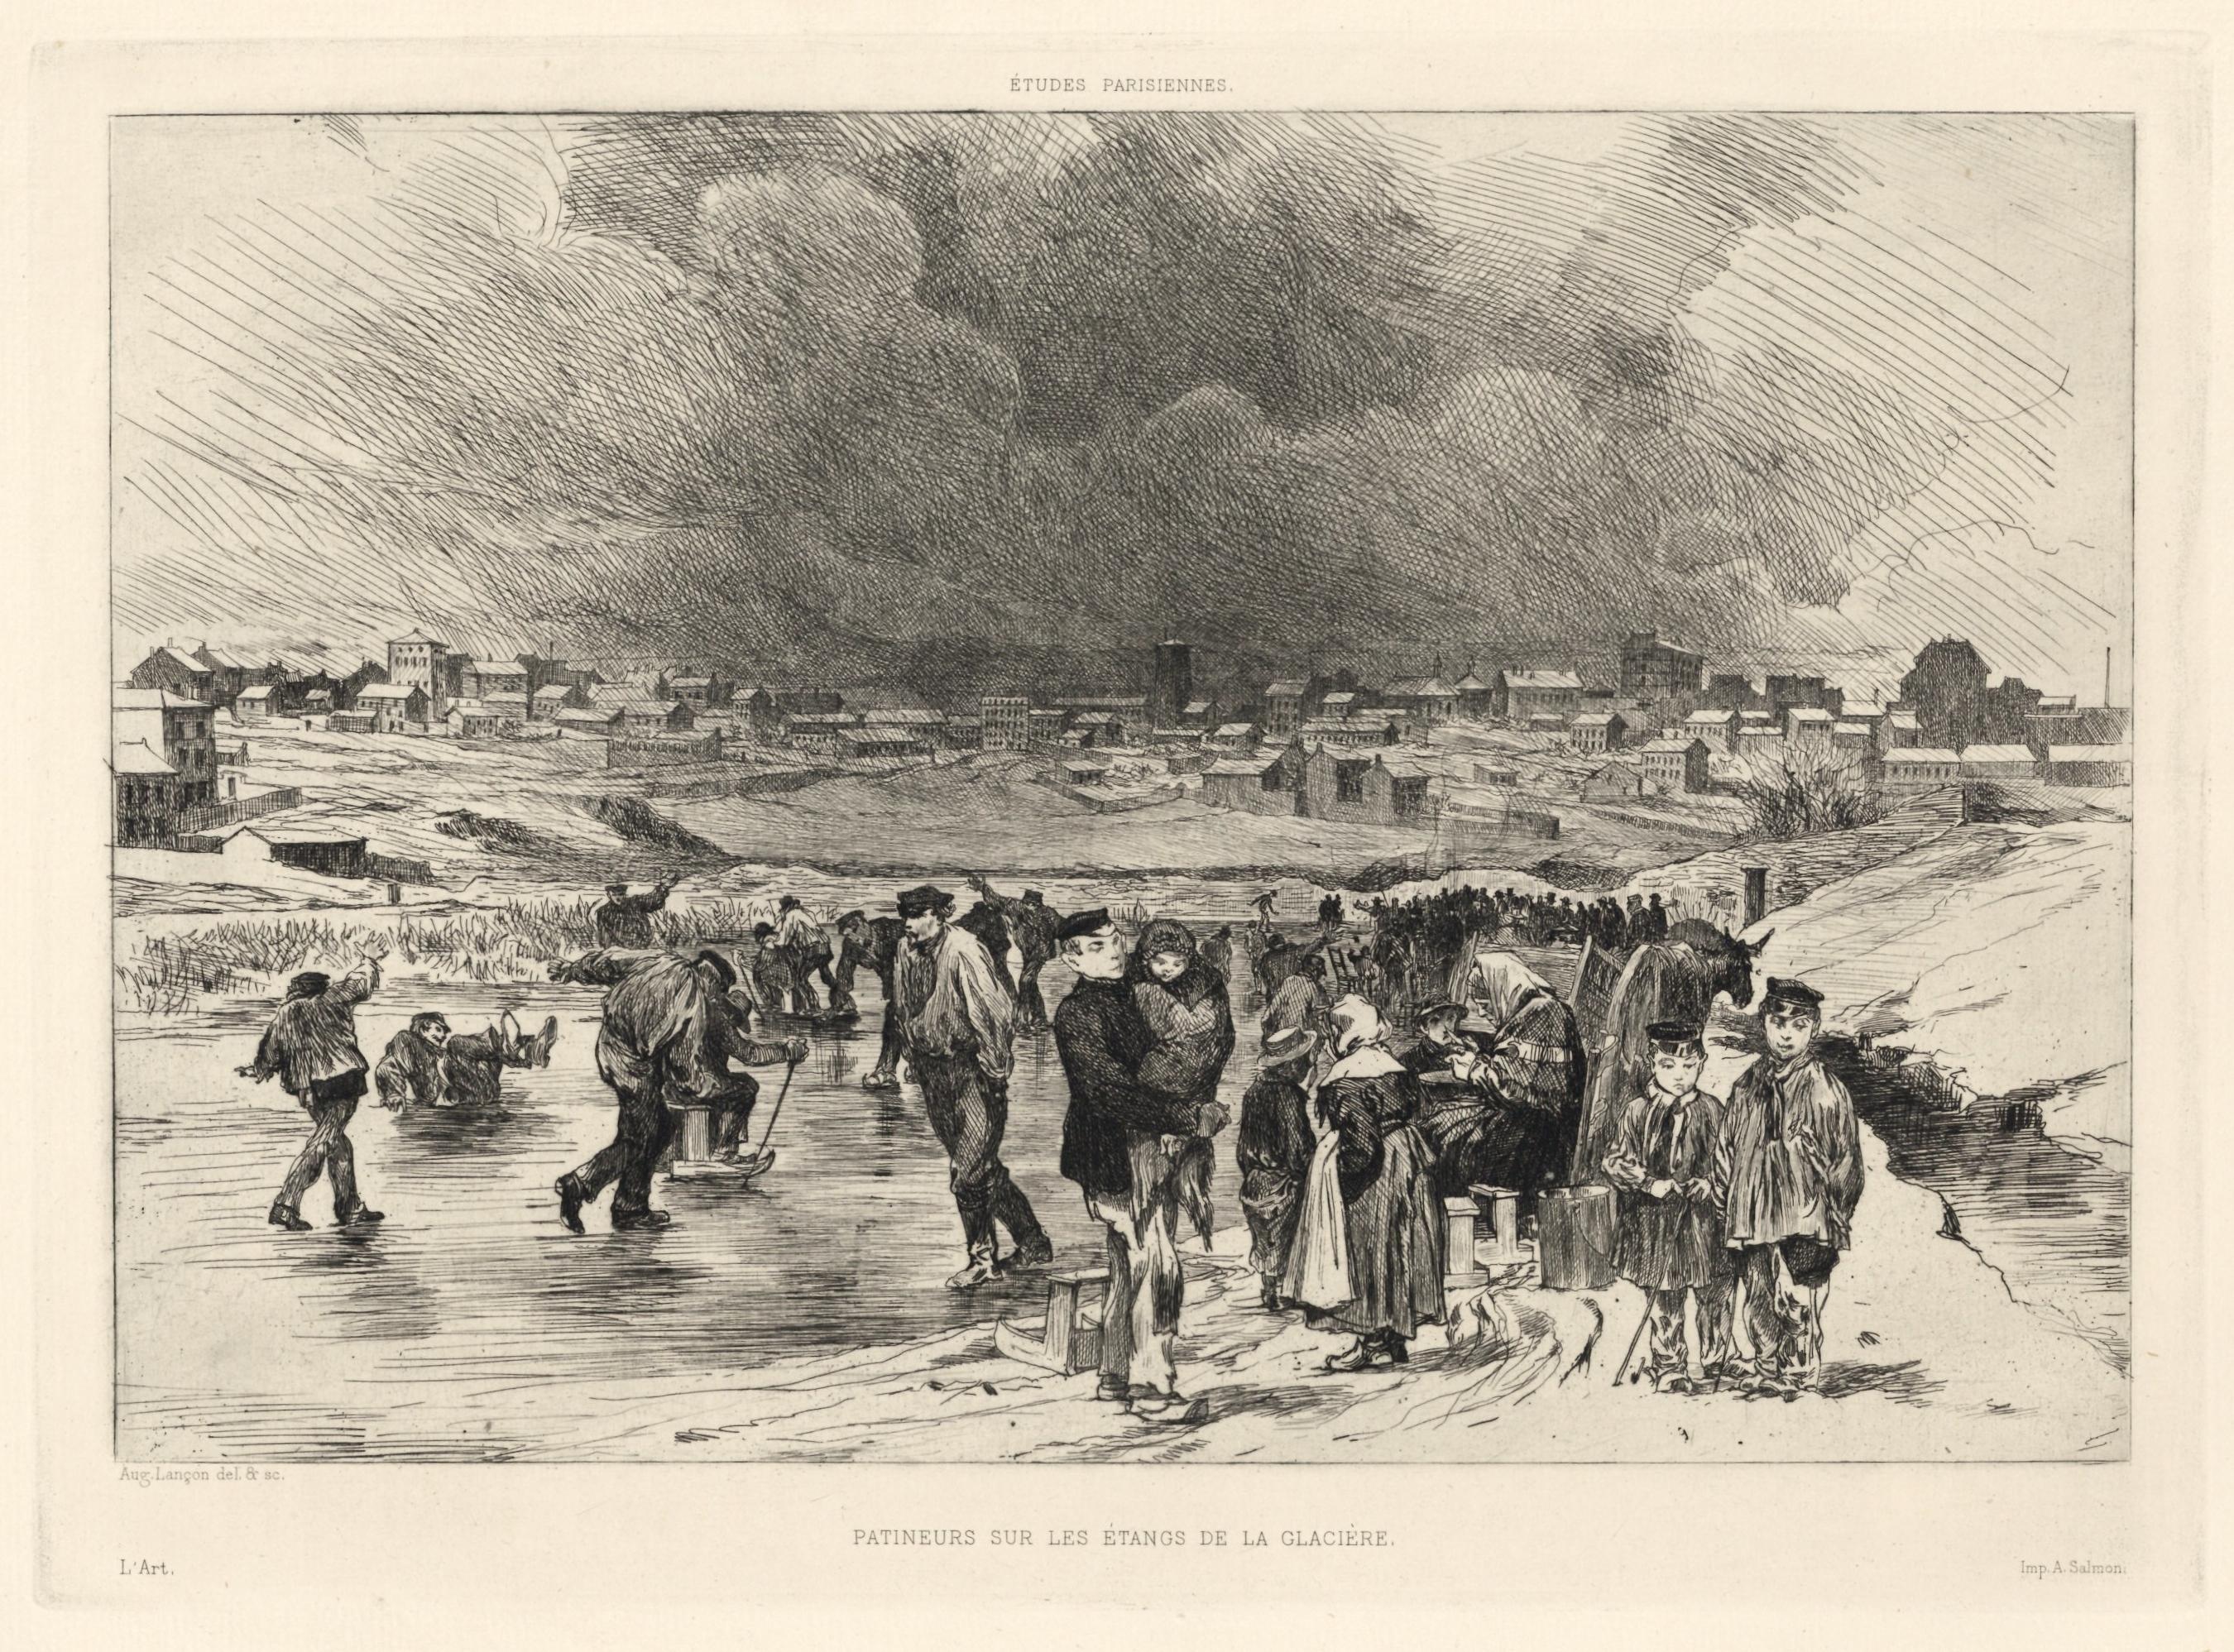 "Patineurs sur les etangs de la glaciere" original etching - Print by Auguste Lançon